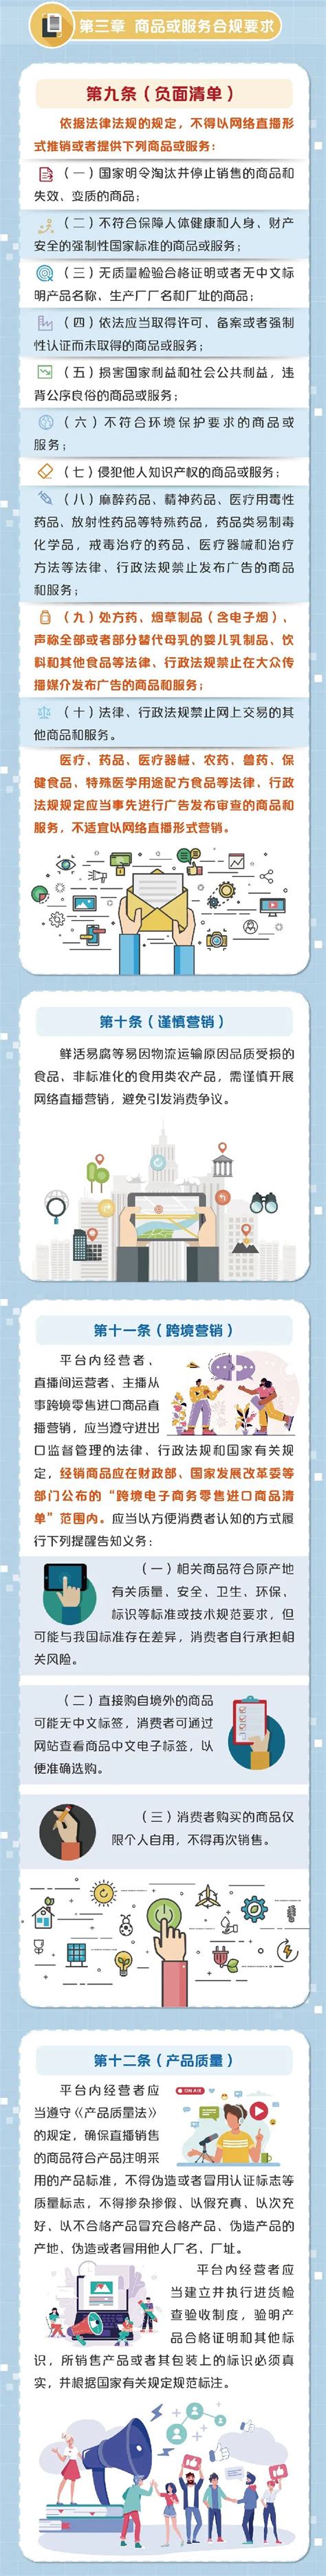 一图读懂《上海市网络直播营销活动合规指引》_视界